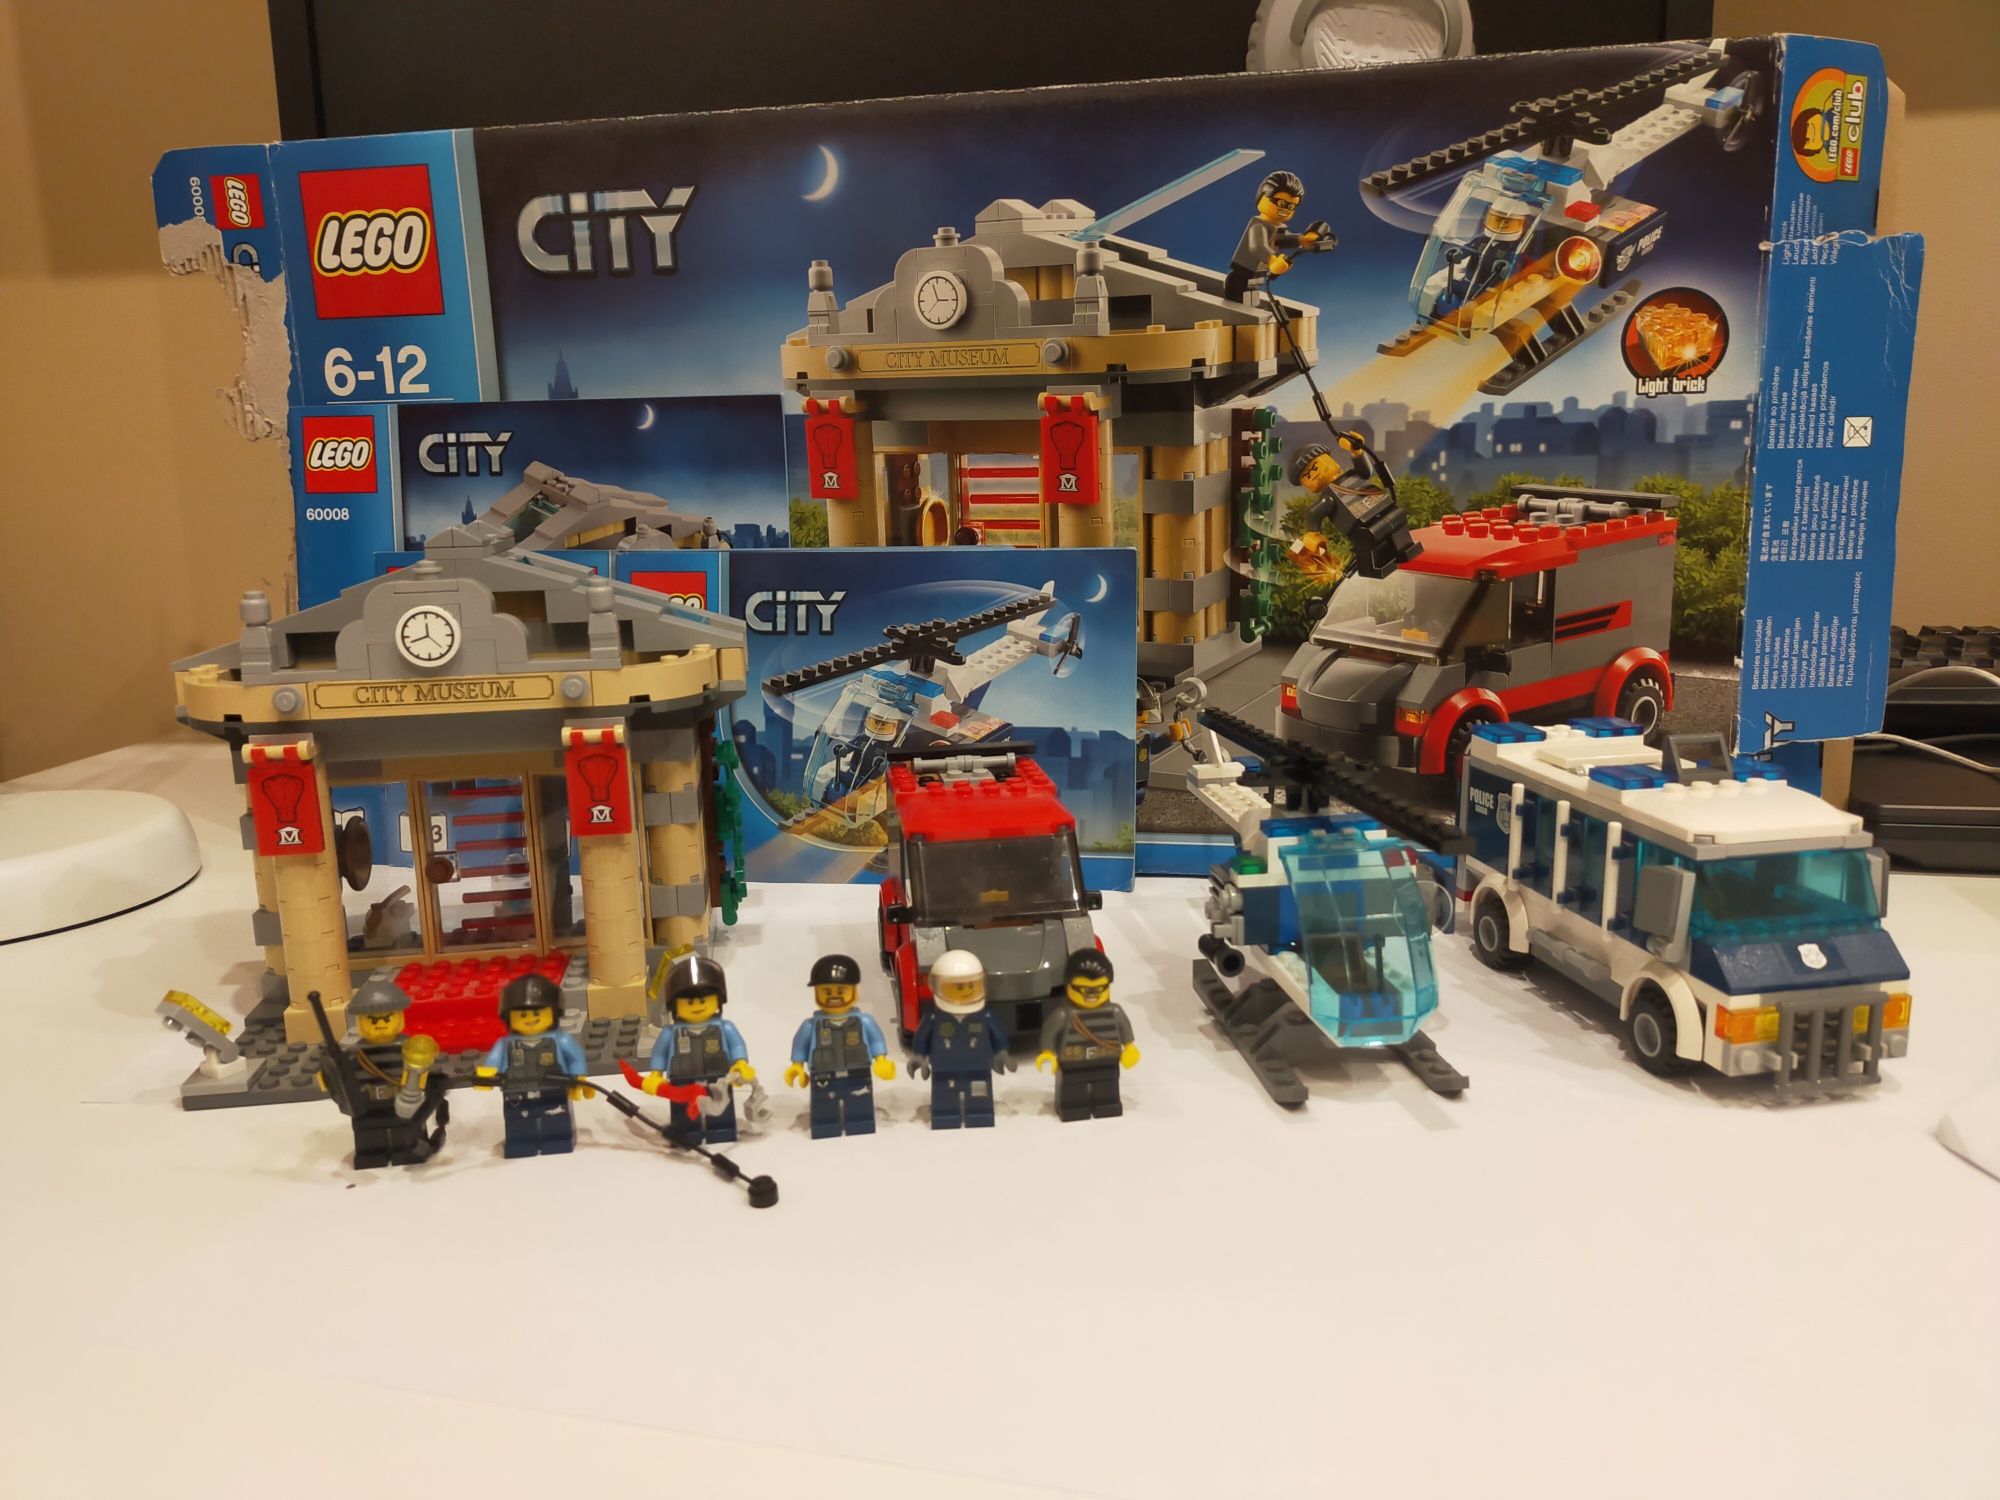 LEGO city policja 60008 instrukcja pudełko